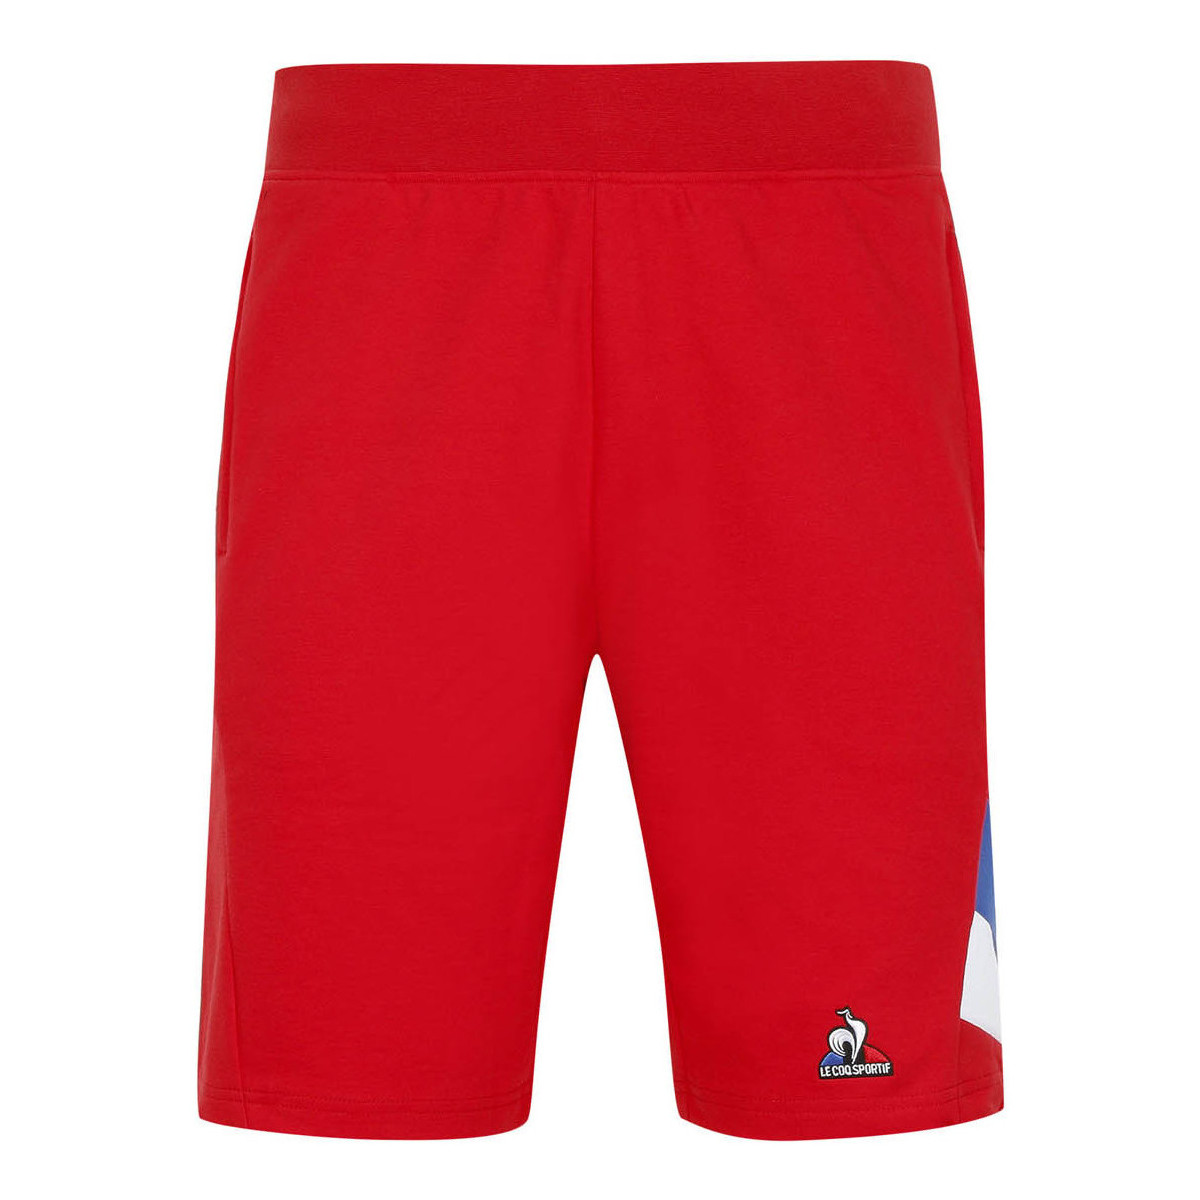 Vêtements Homme Shorts / Bermudas Le Coq Sportif Short Tricolore Rouge